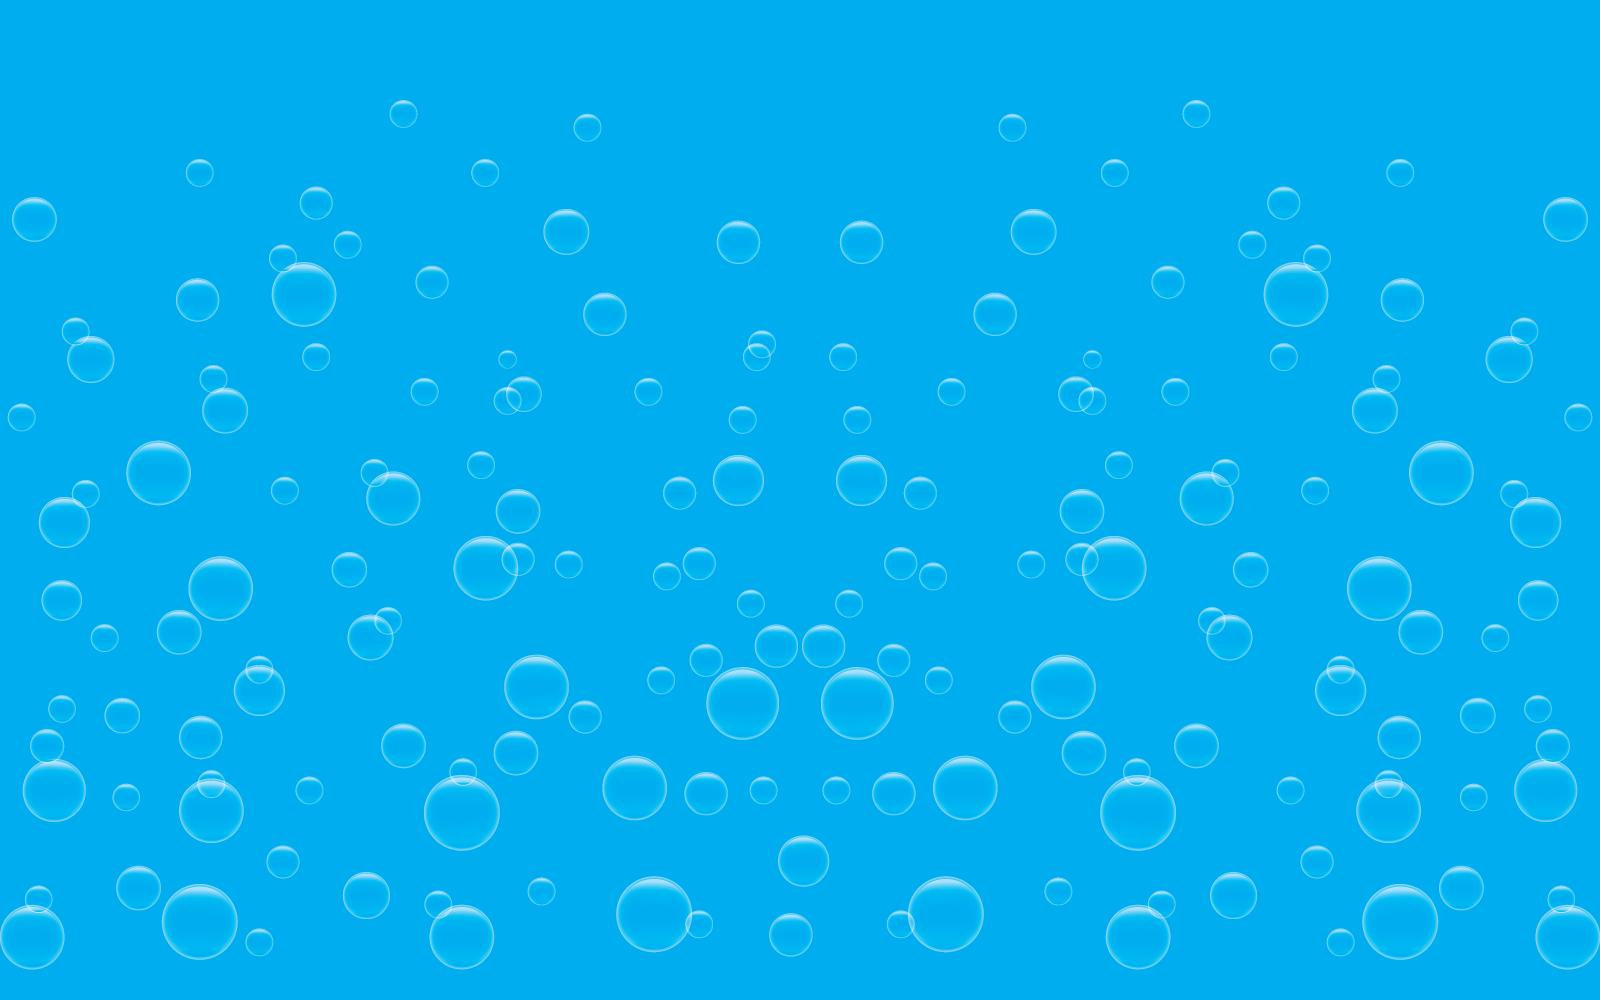 Natural realistic bubble icon illustration design template